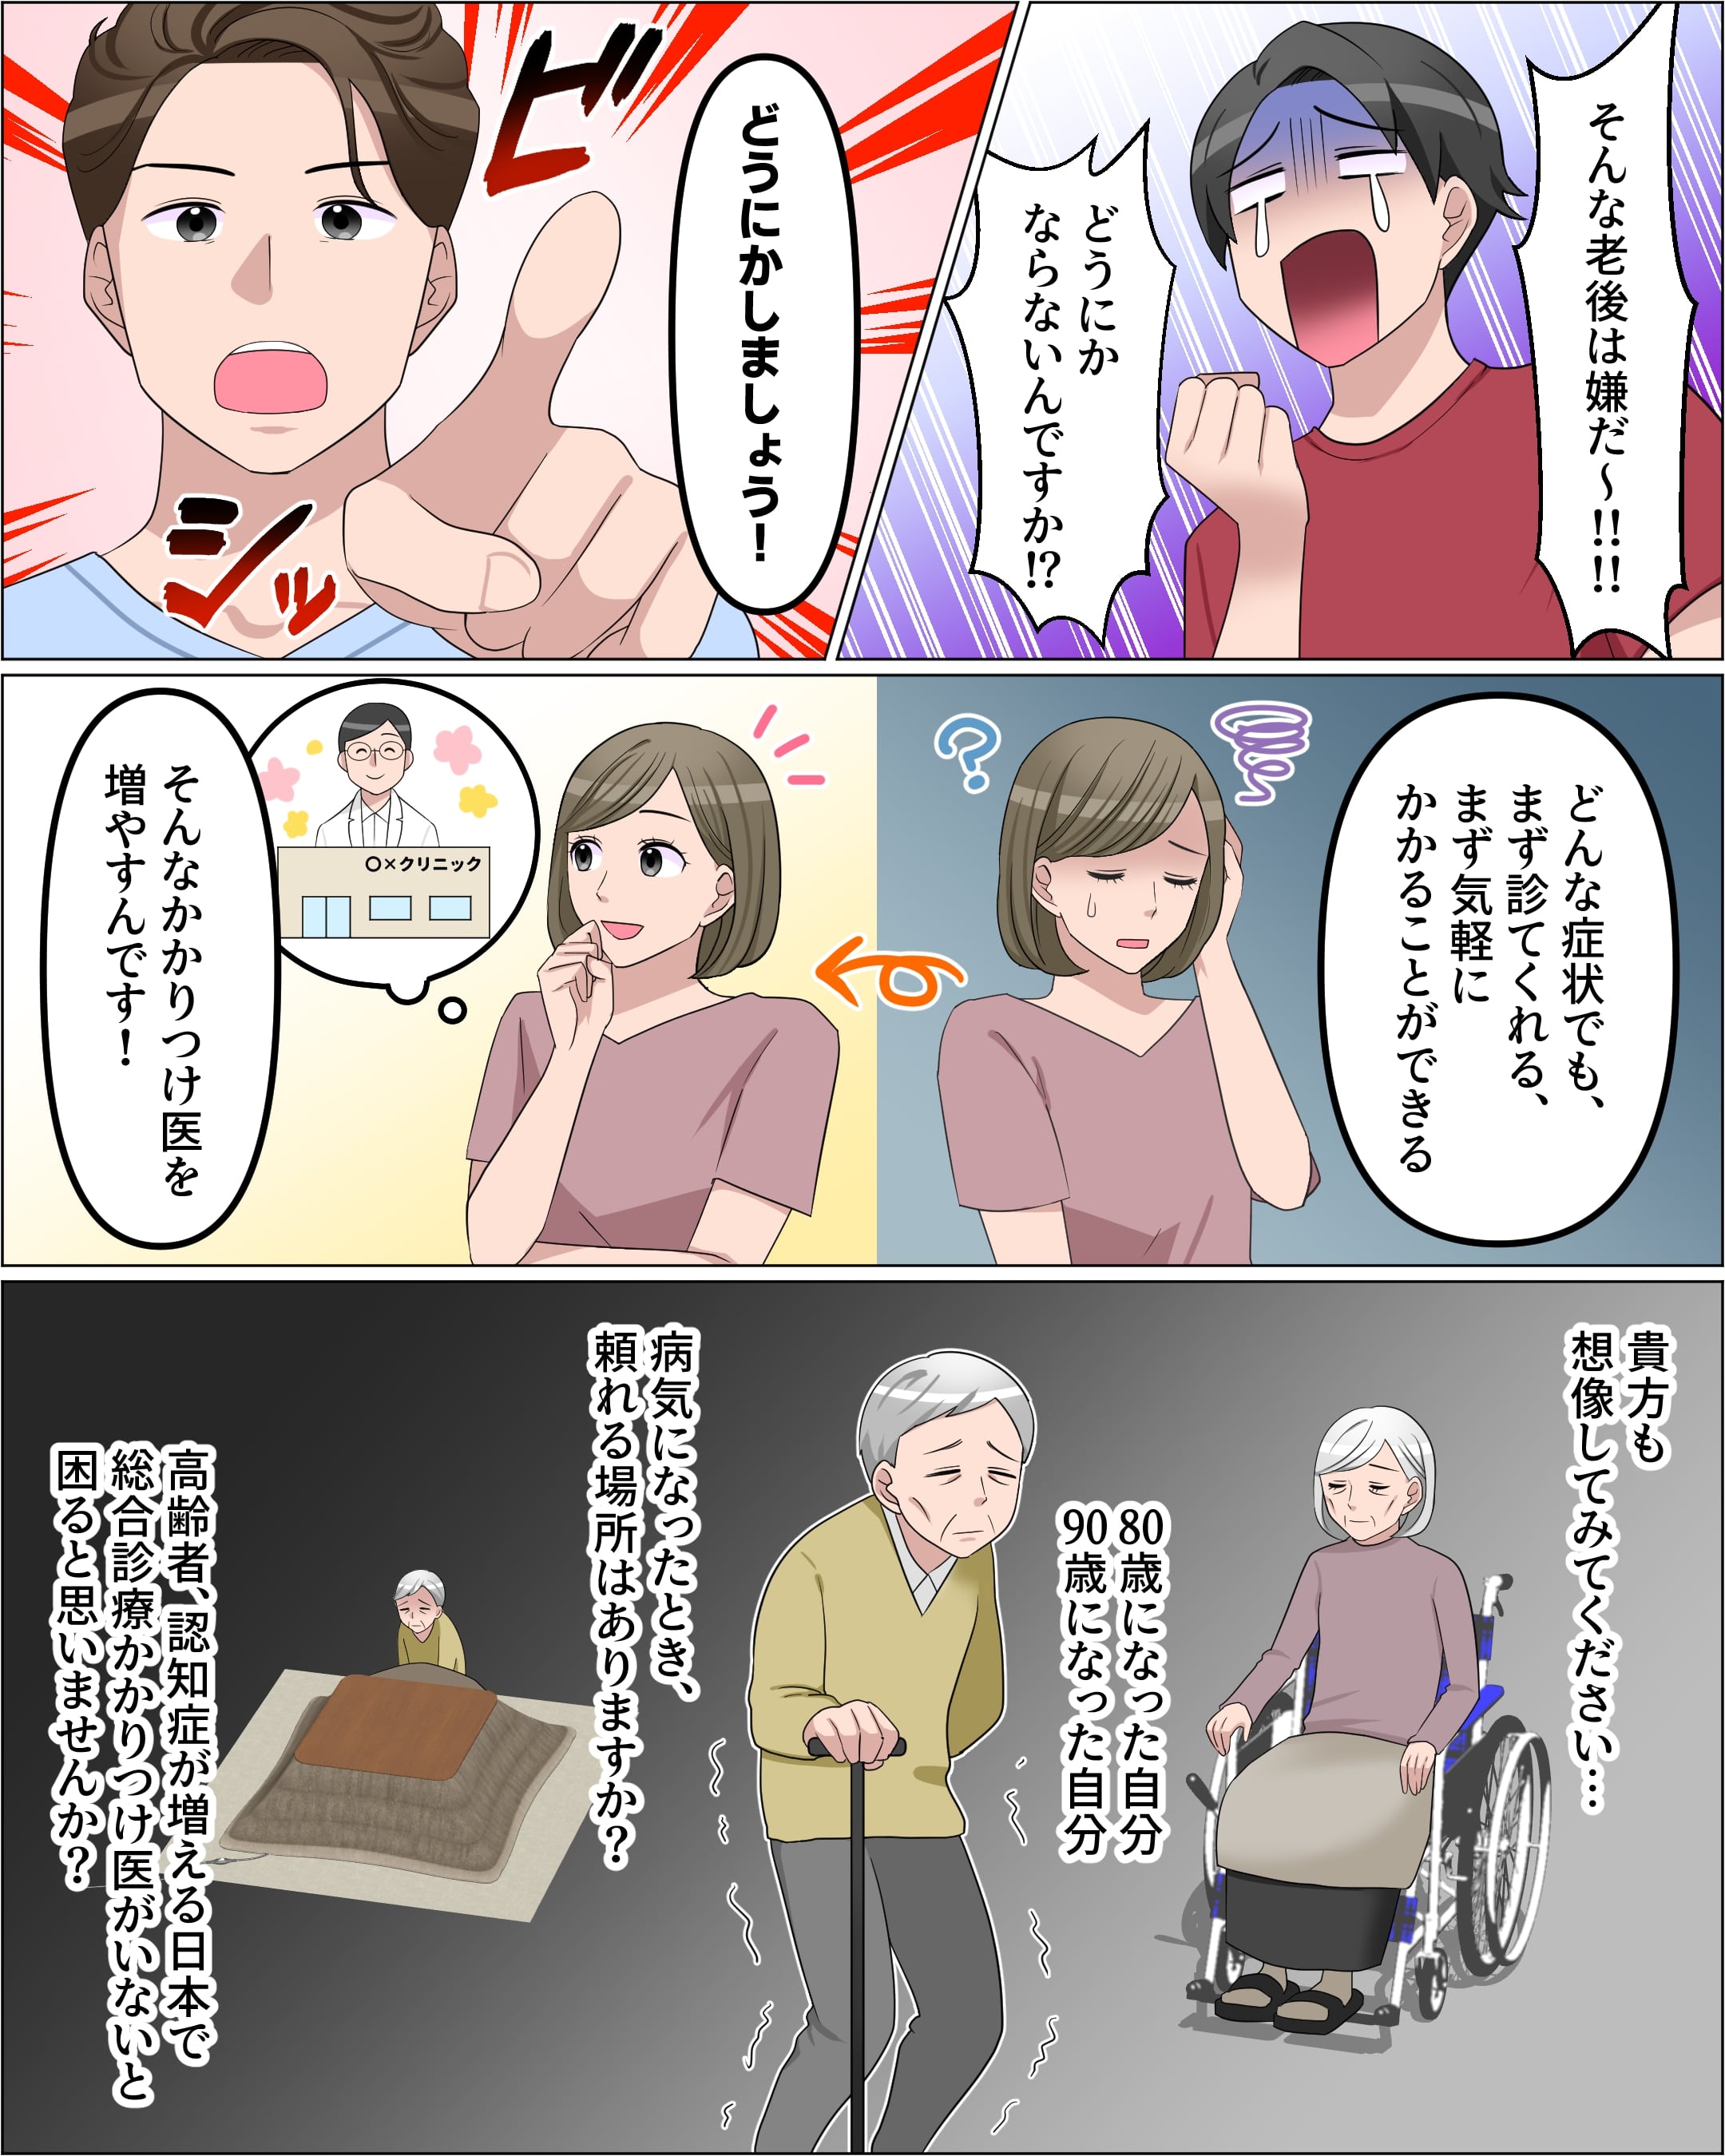 高齢者社会になる日本-9